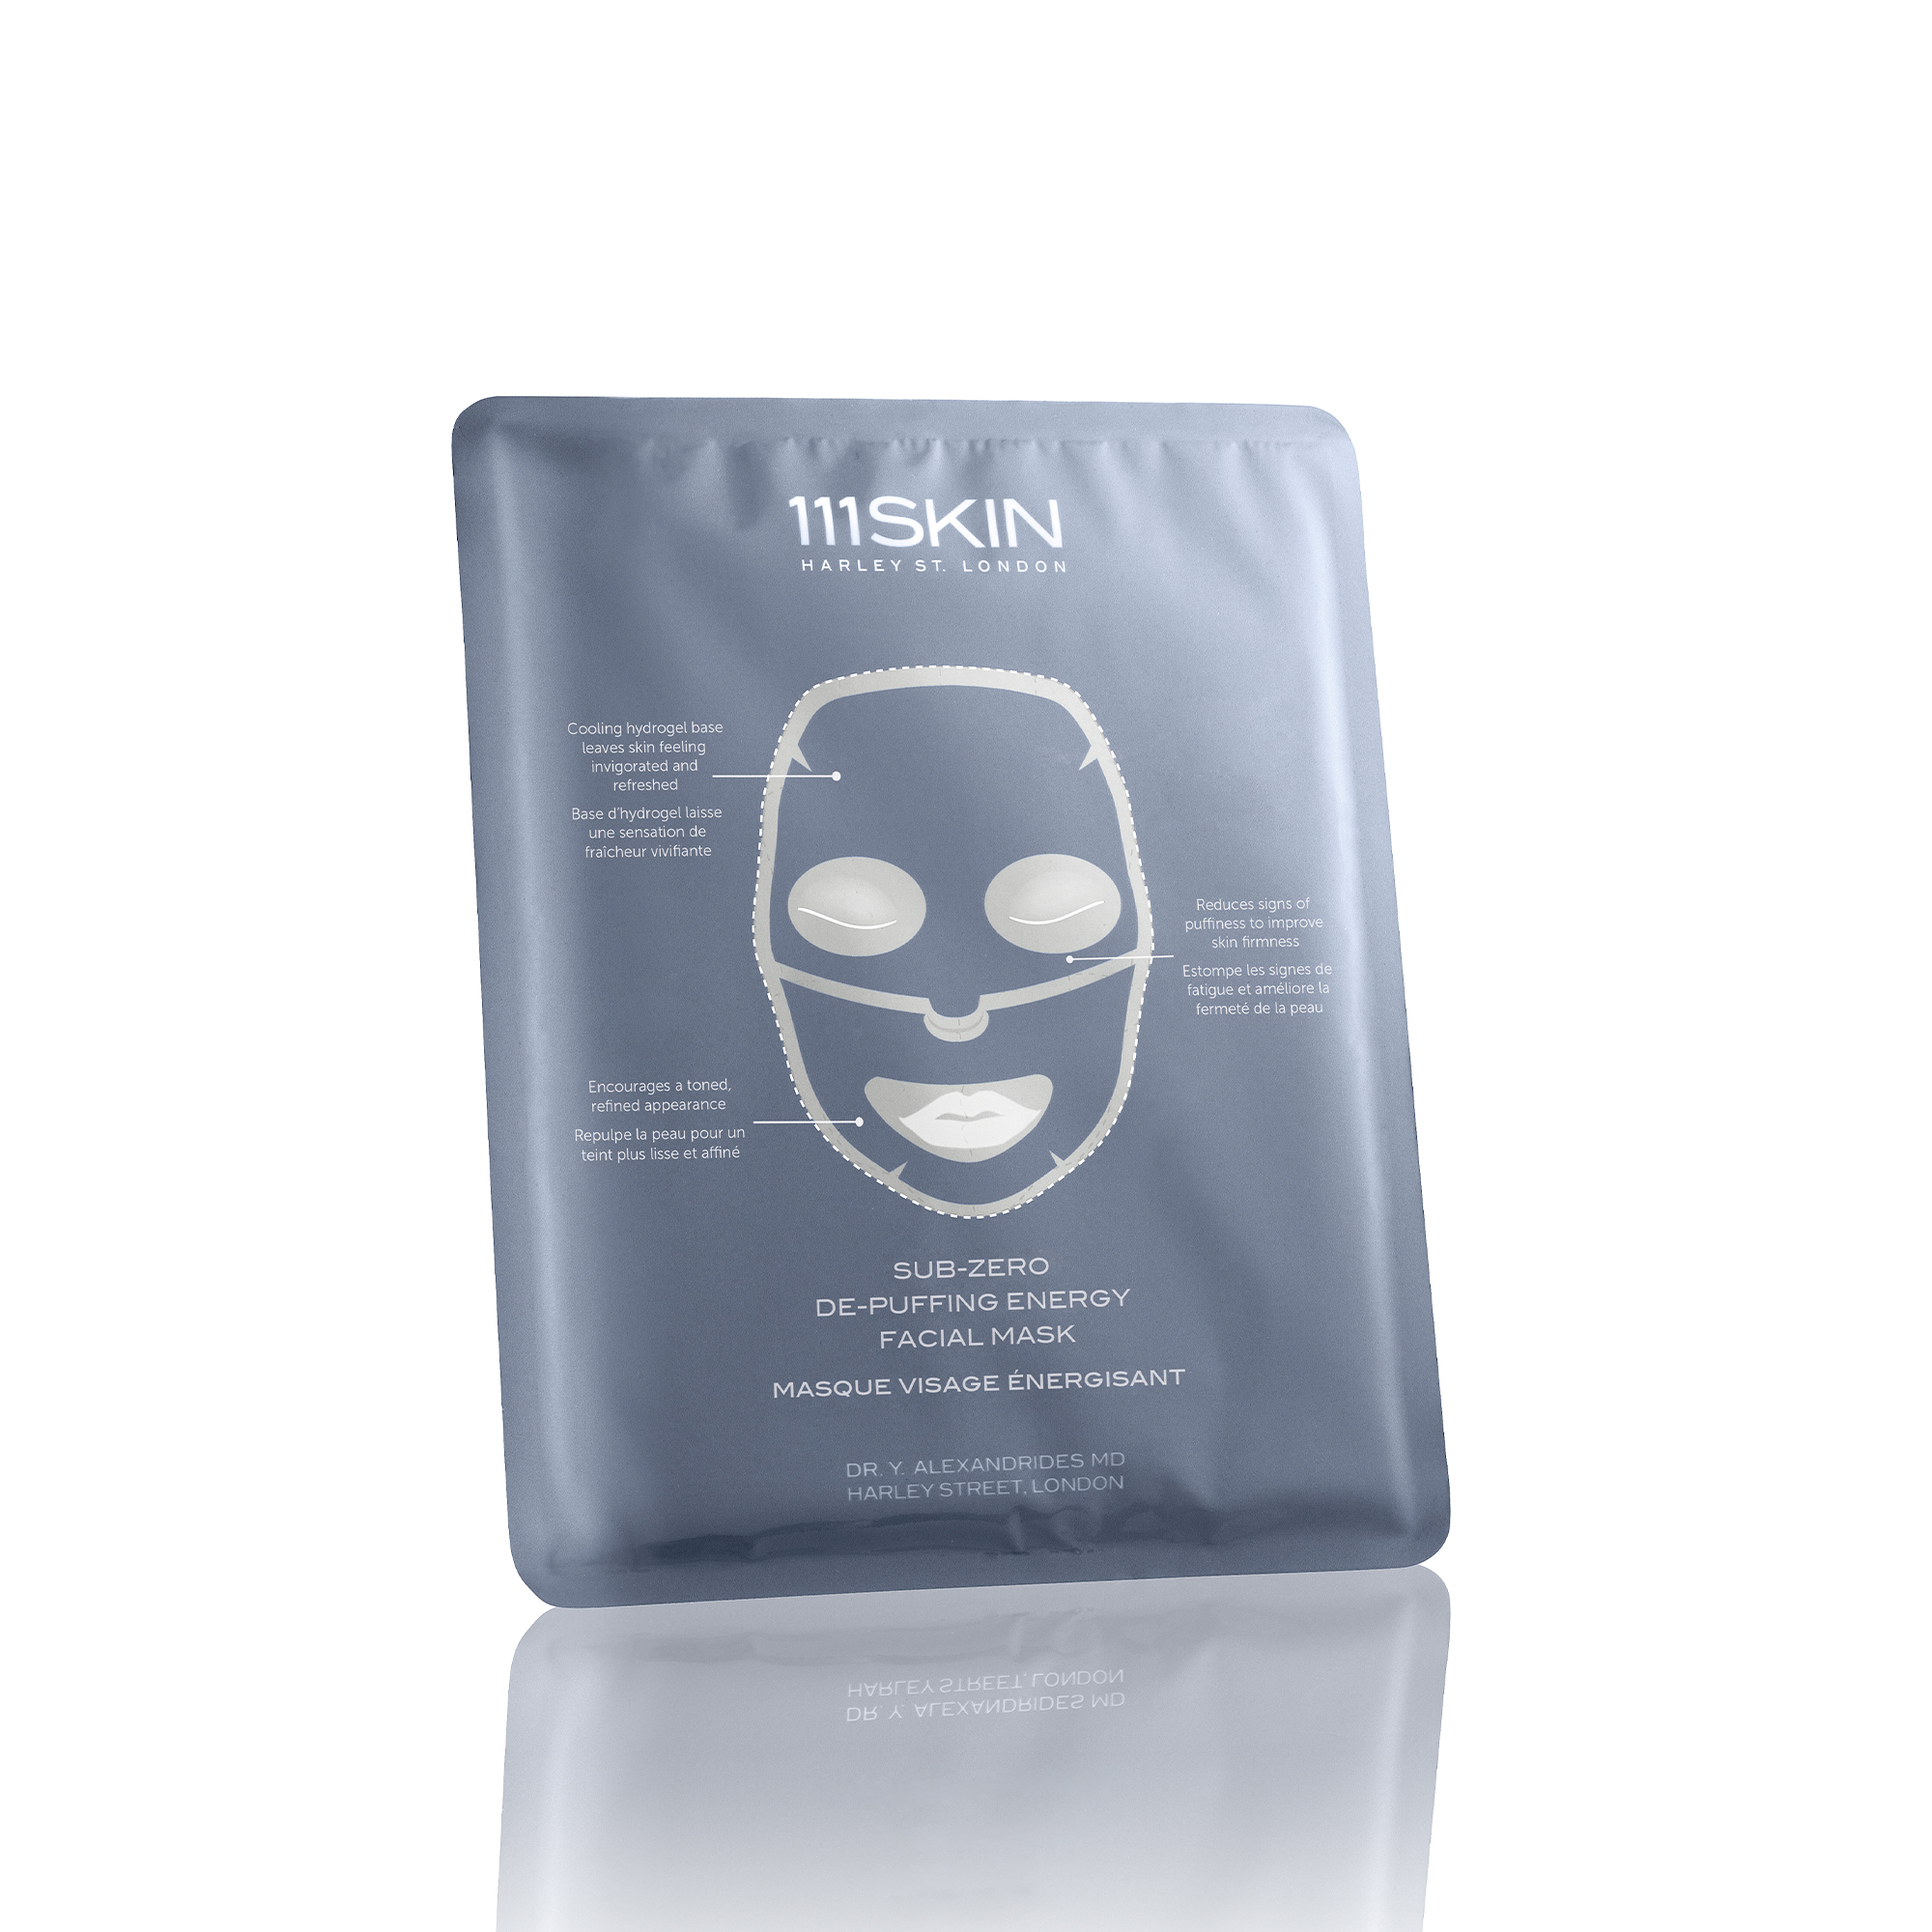 Sub-Zero De-Puffing Energy Facial Mask Box